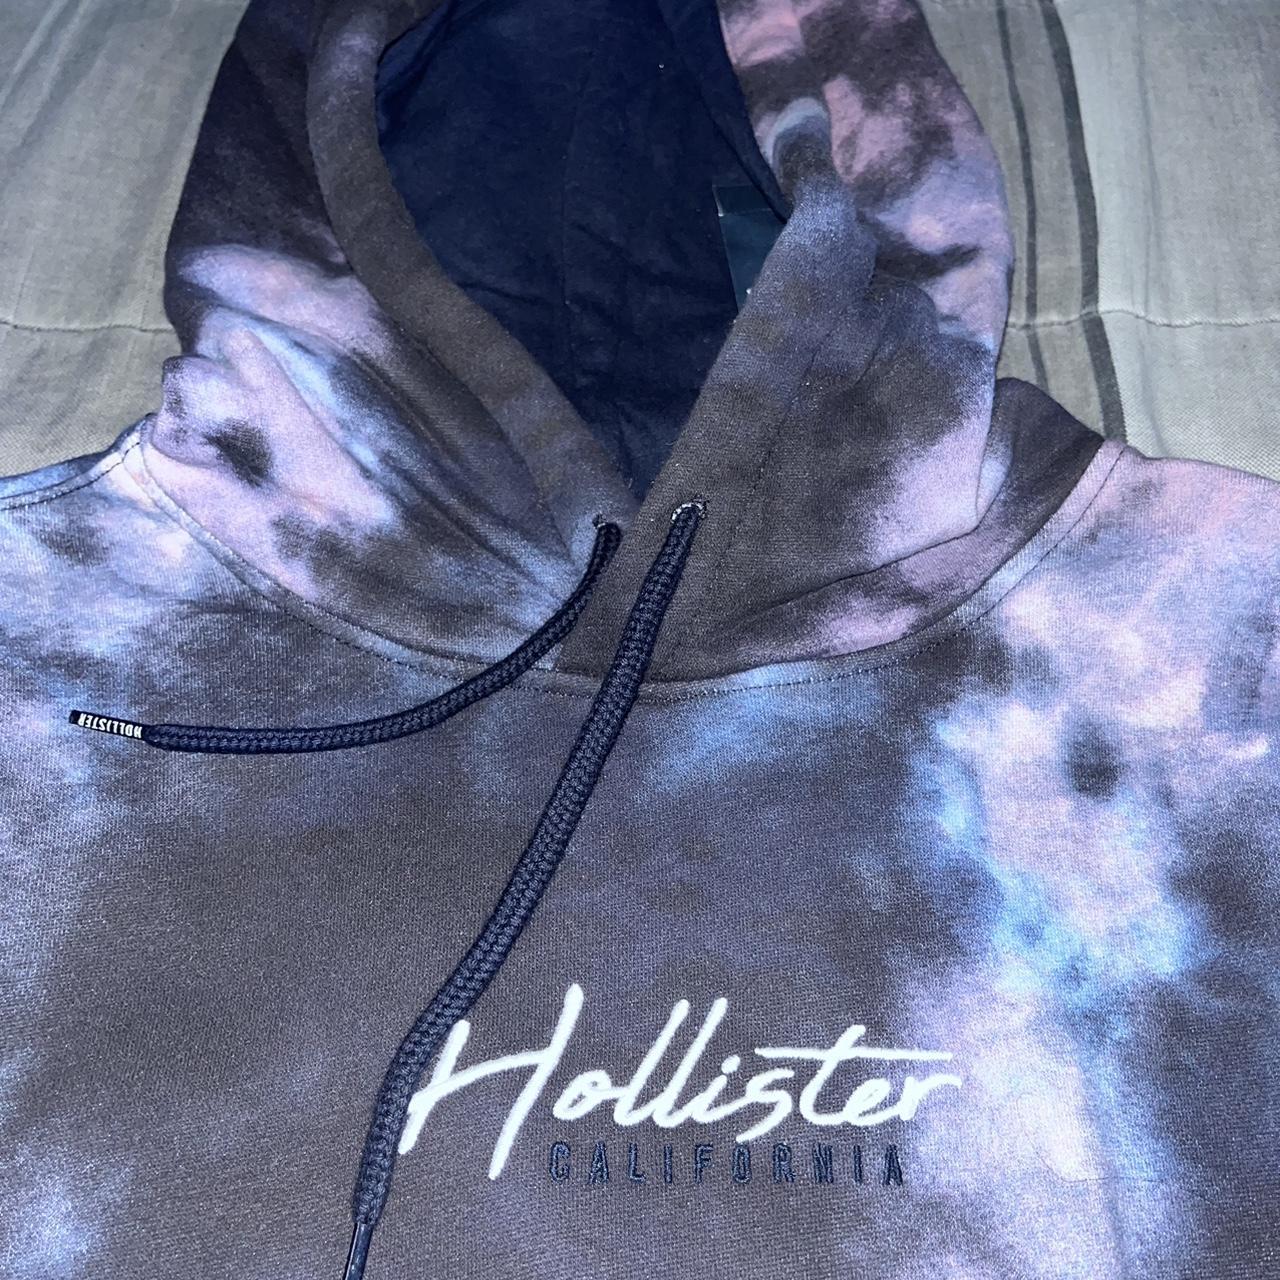 Hollister Tie-Dye Hoodie Men's size medium hoodie. - Depop